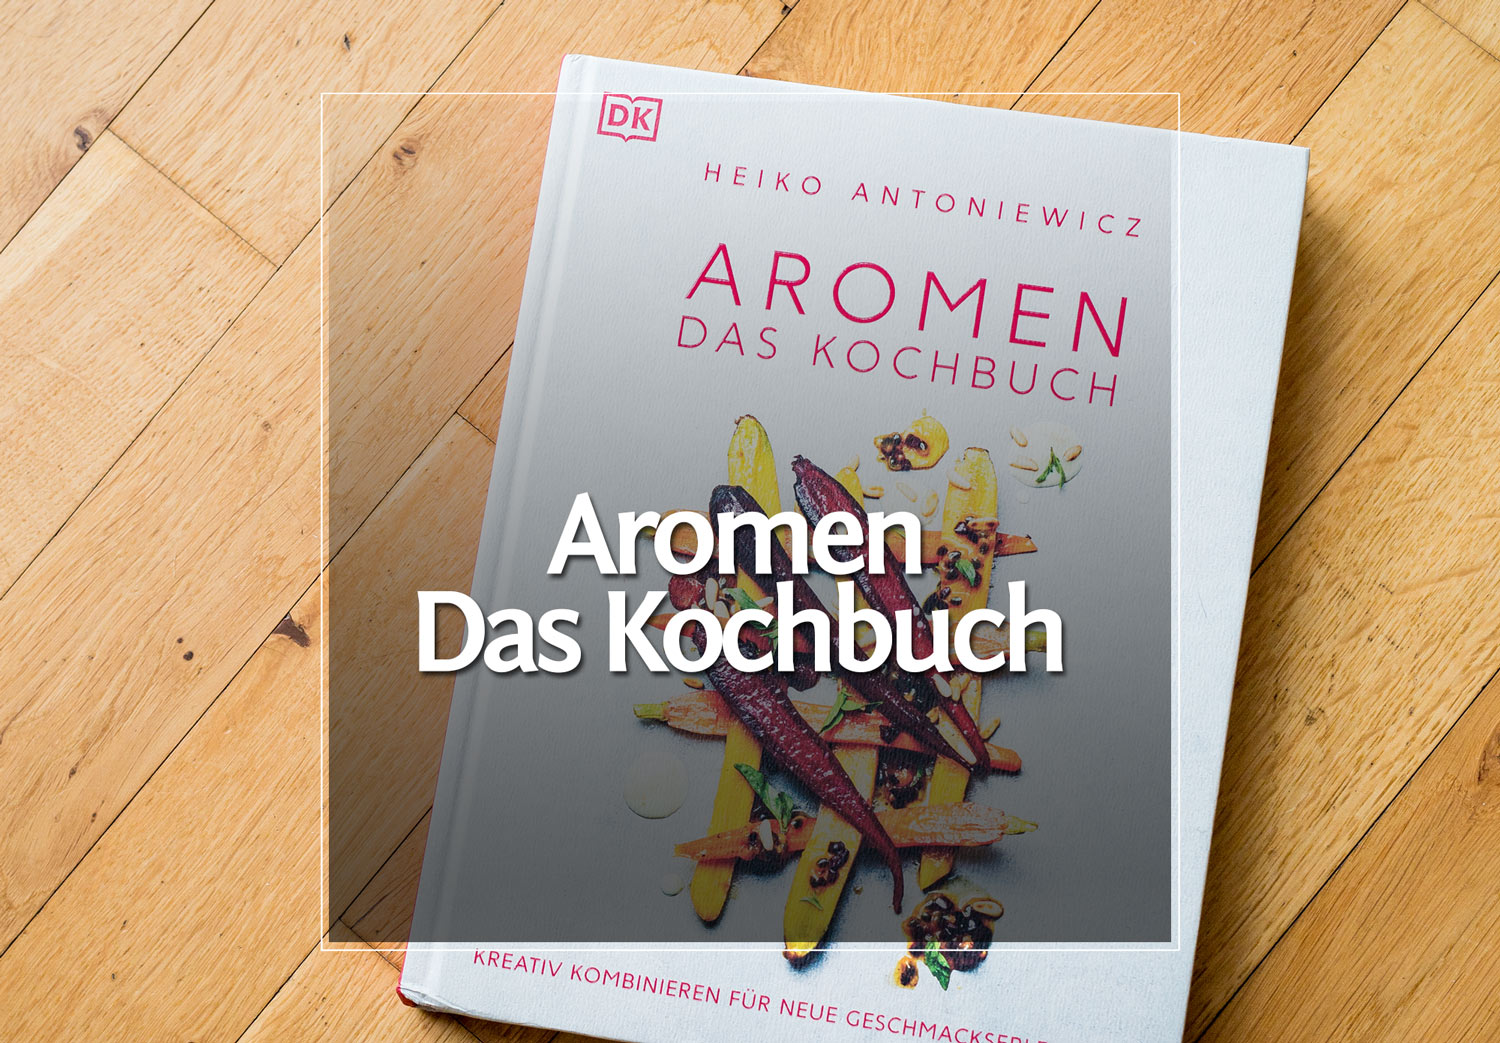 Aromen – Das Kochbuch